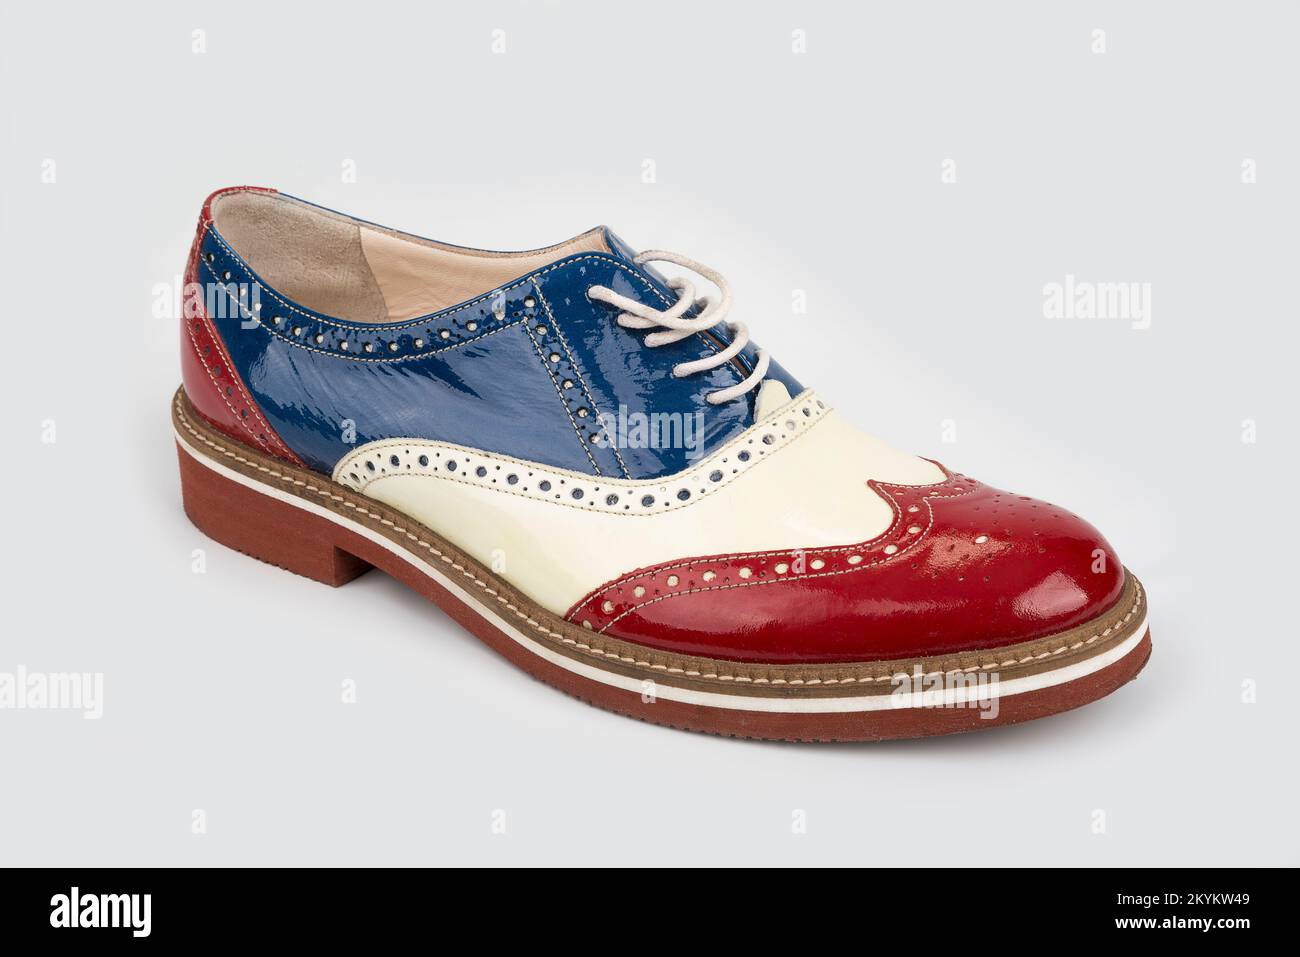 Spectator shoes immagini e fotografie stock ad alta risoluzione - Alamy